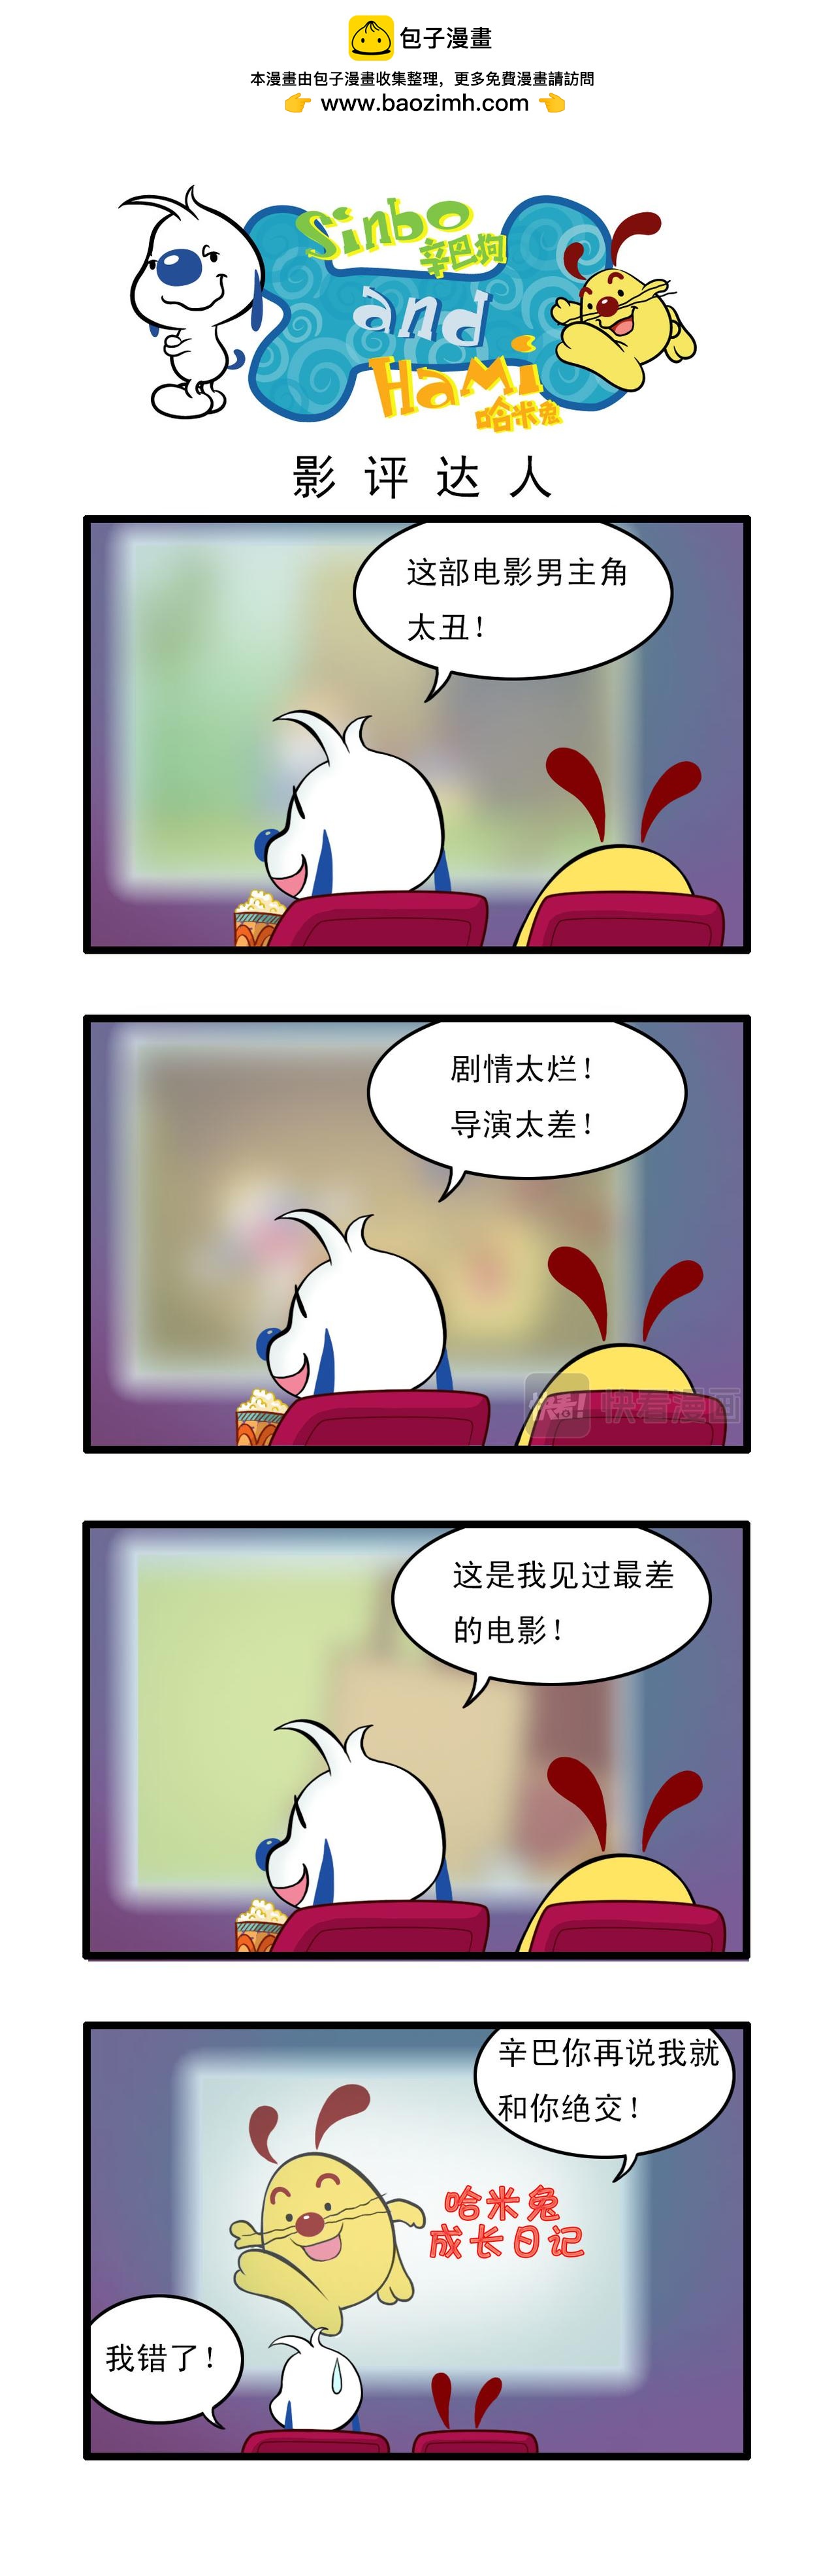 辛巴狗日常漫畫 - 多格11 - 1